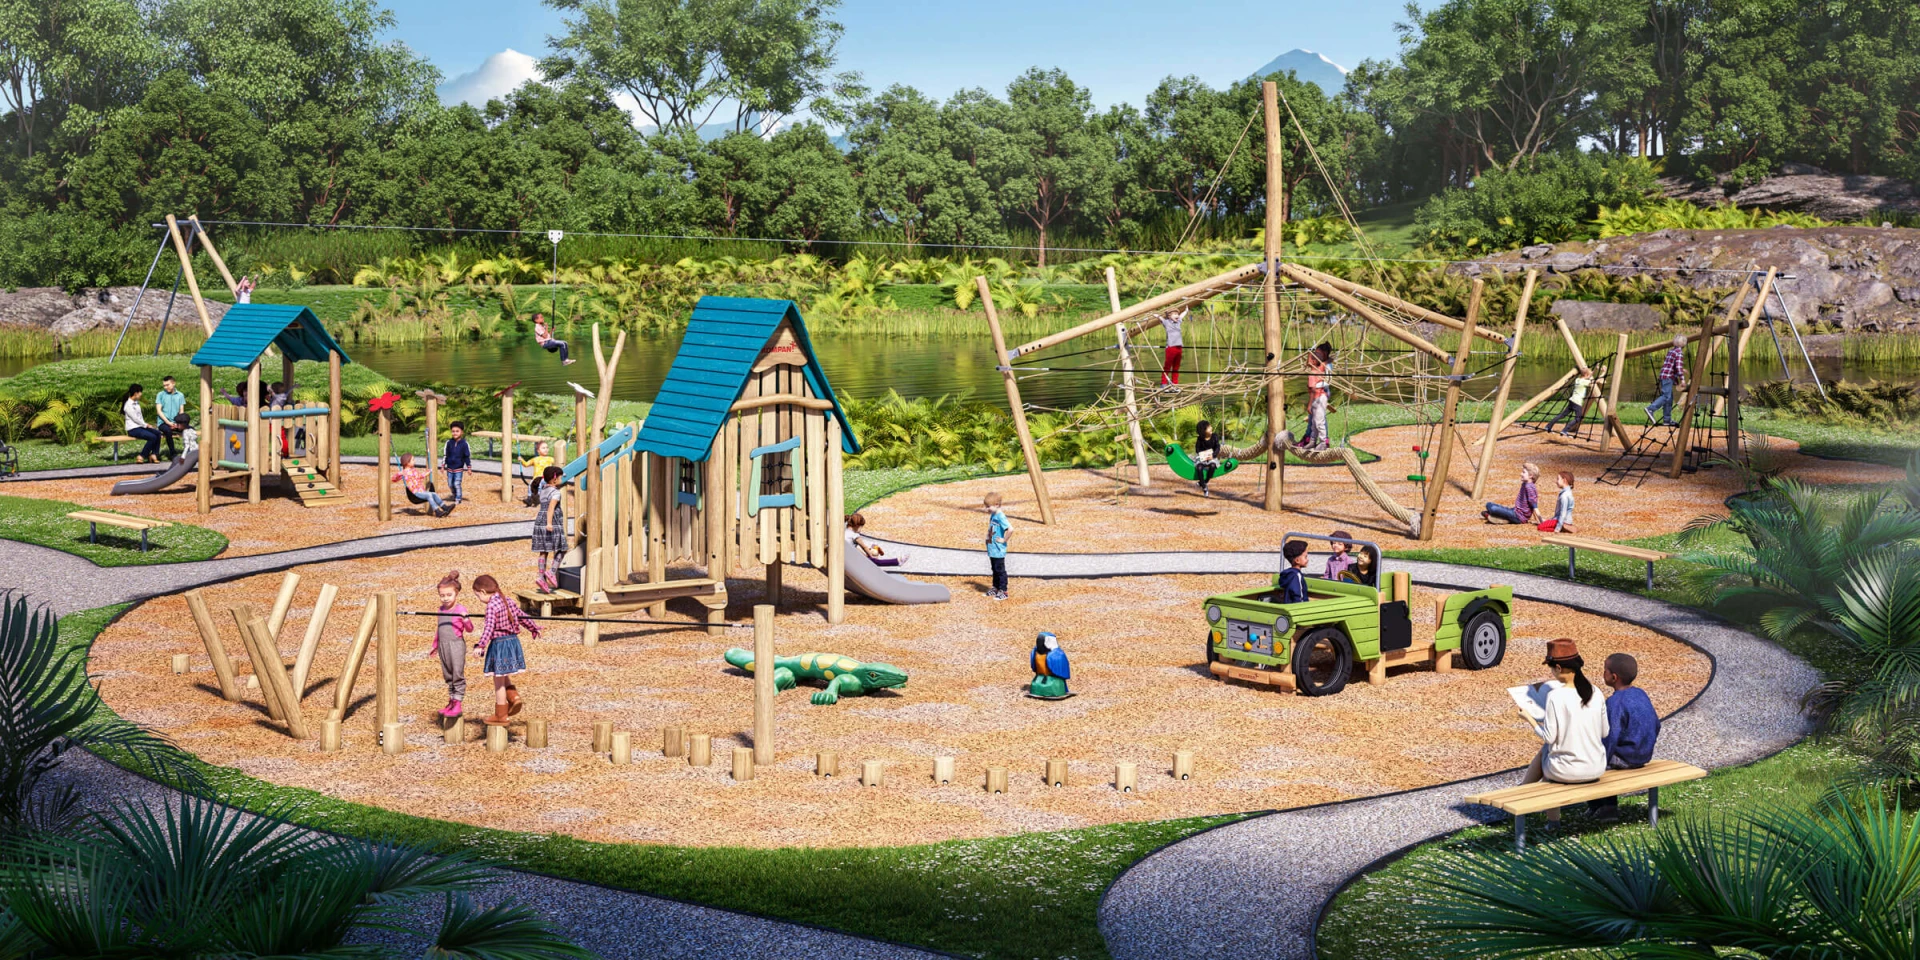 Idée de design d'une aire de jeux en bois dans un parc